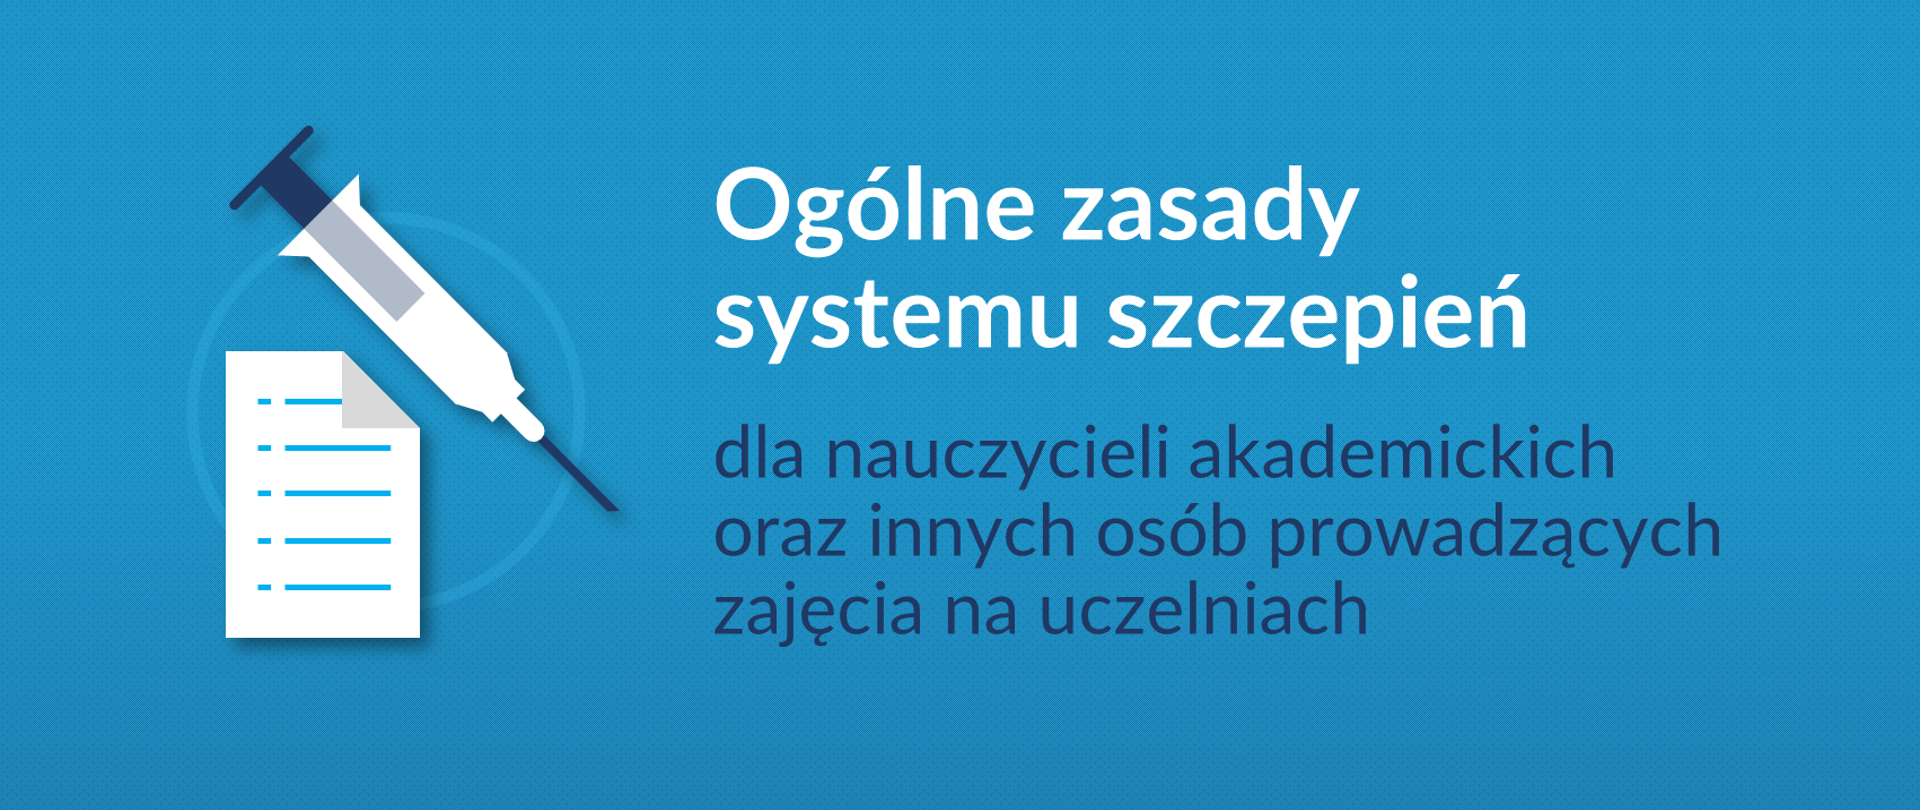 Grafika z tekstem: "Ogólne zasady systemu szczepień dla nauczycieli akademickich oraz innych osób prowadzących zajęcia na uczelniach"